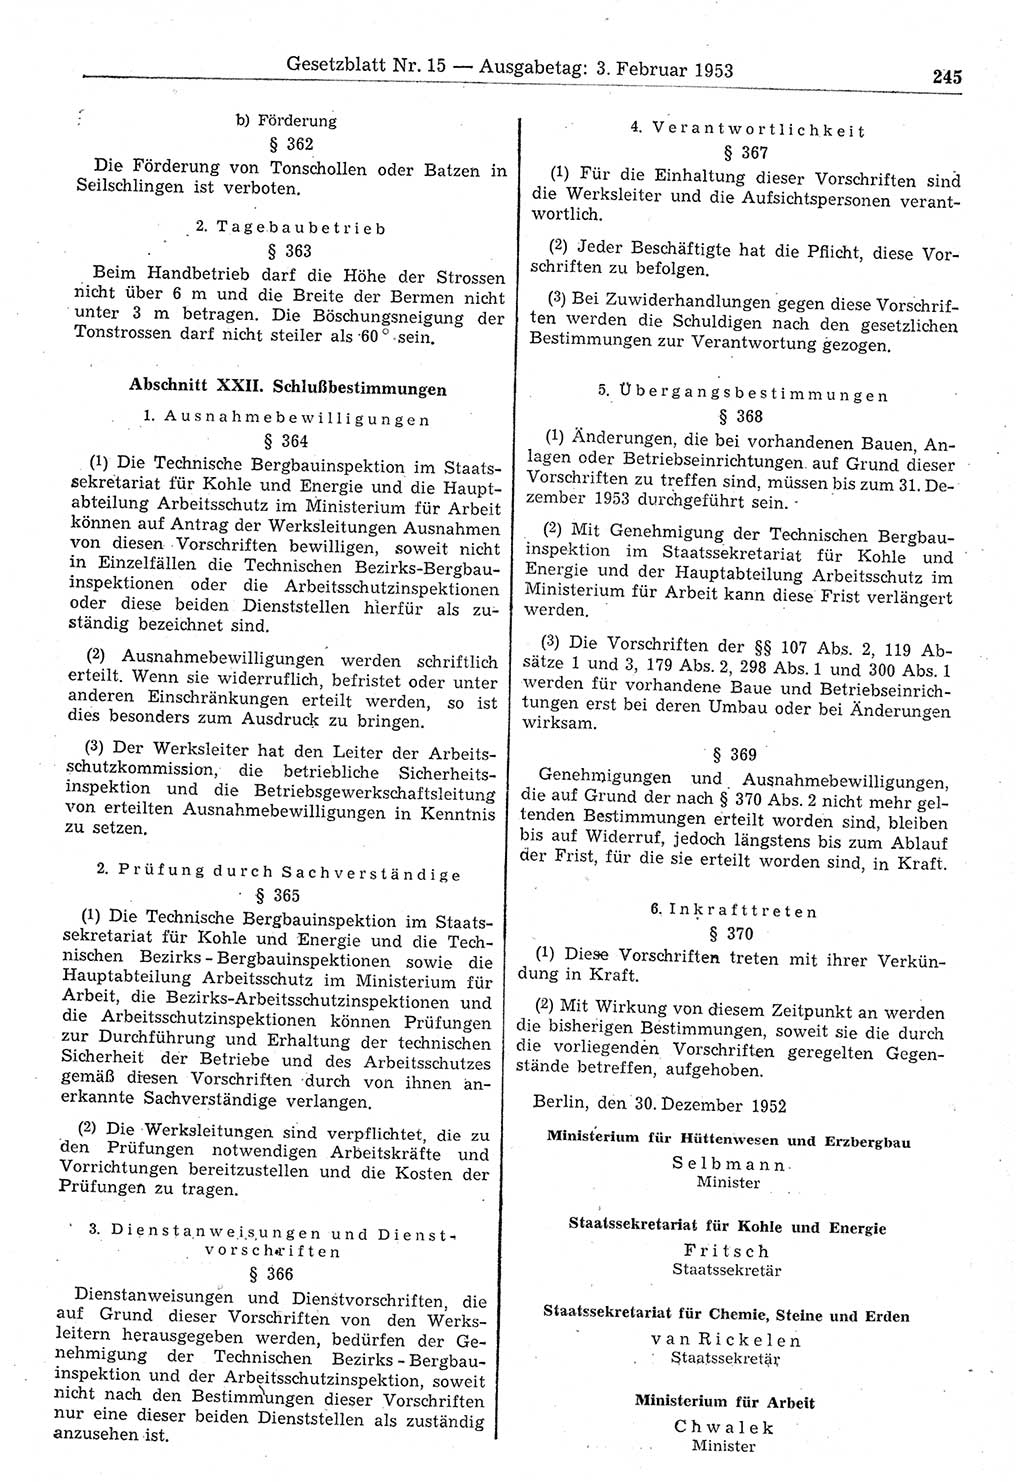 Gesetzblatt (GBl.) der Deutschen Demokratischen Republik (DDR) 1953, Seite 245 (GBl. DDR 1953, S. 245)